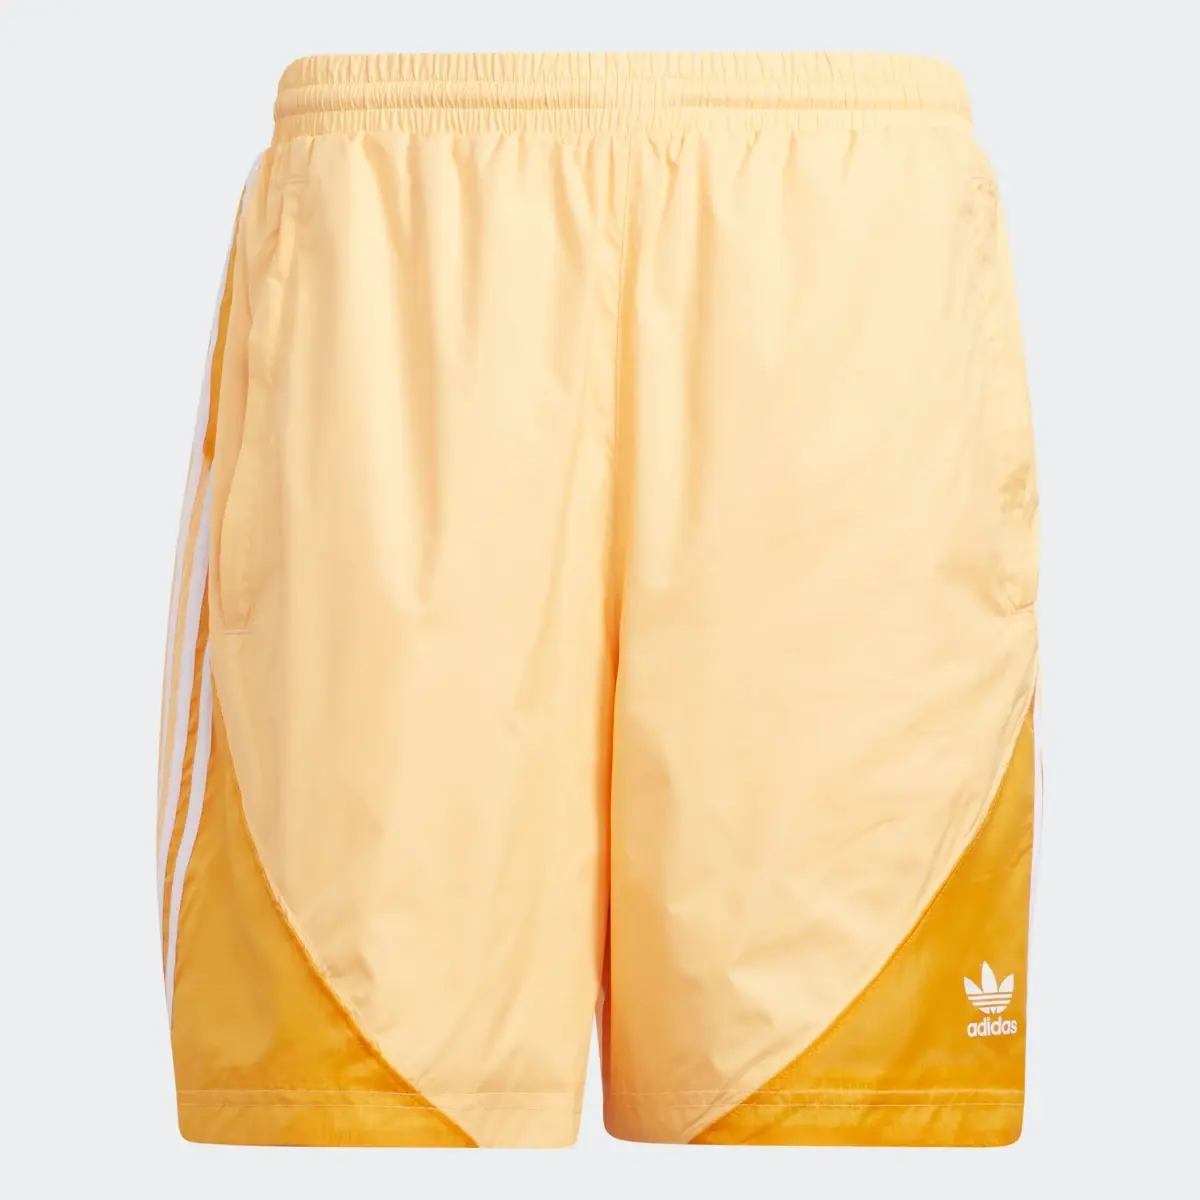 Adidas Summer SST Shorts. 1